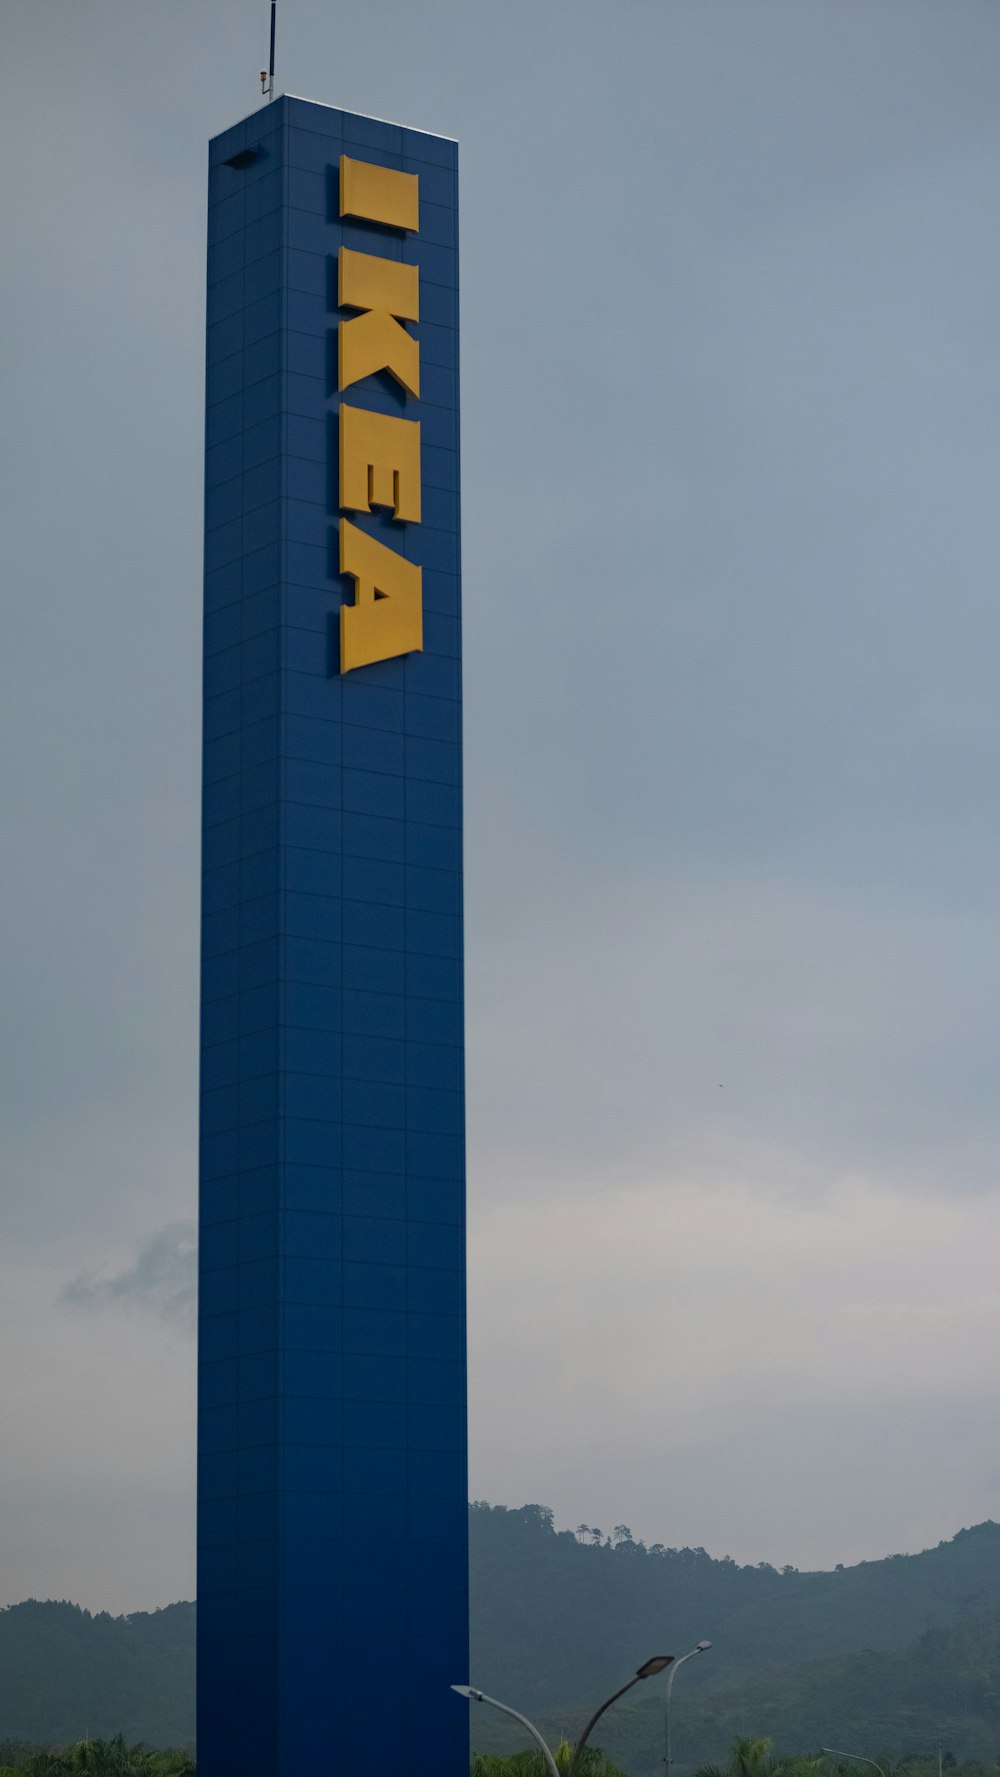 Ein hohes blaues Gebäude mit dem Wort IKEA darauf